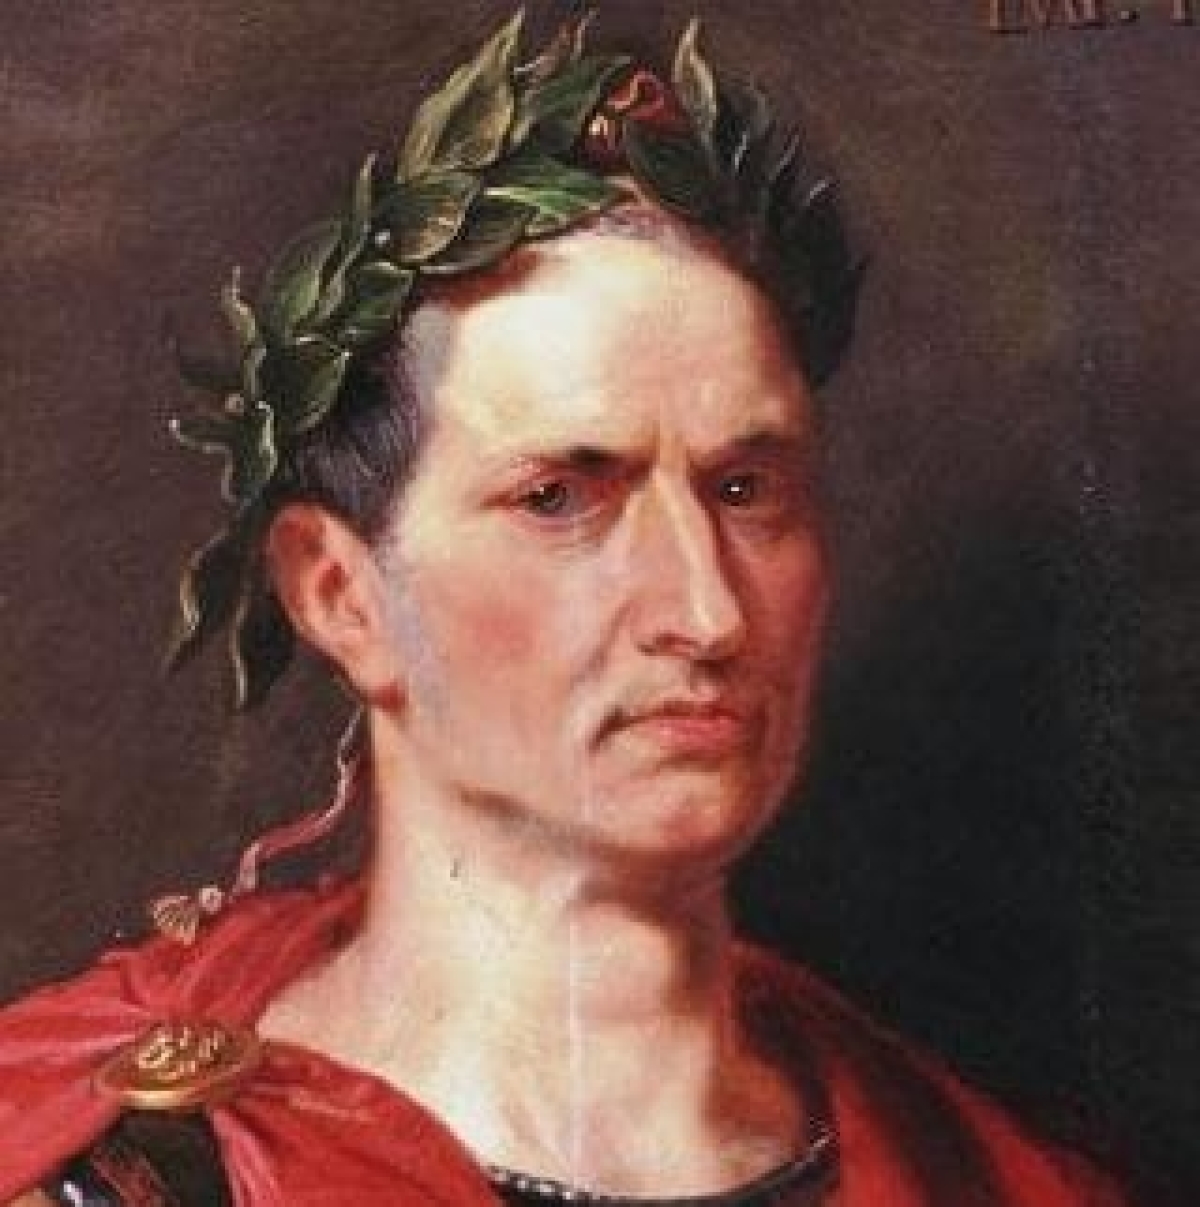 Julius Caesar Quotes: Top Quotes From Shakespeare's Caesar